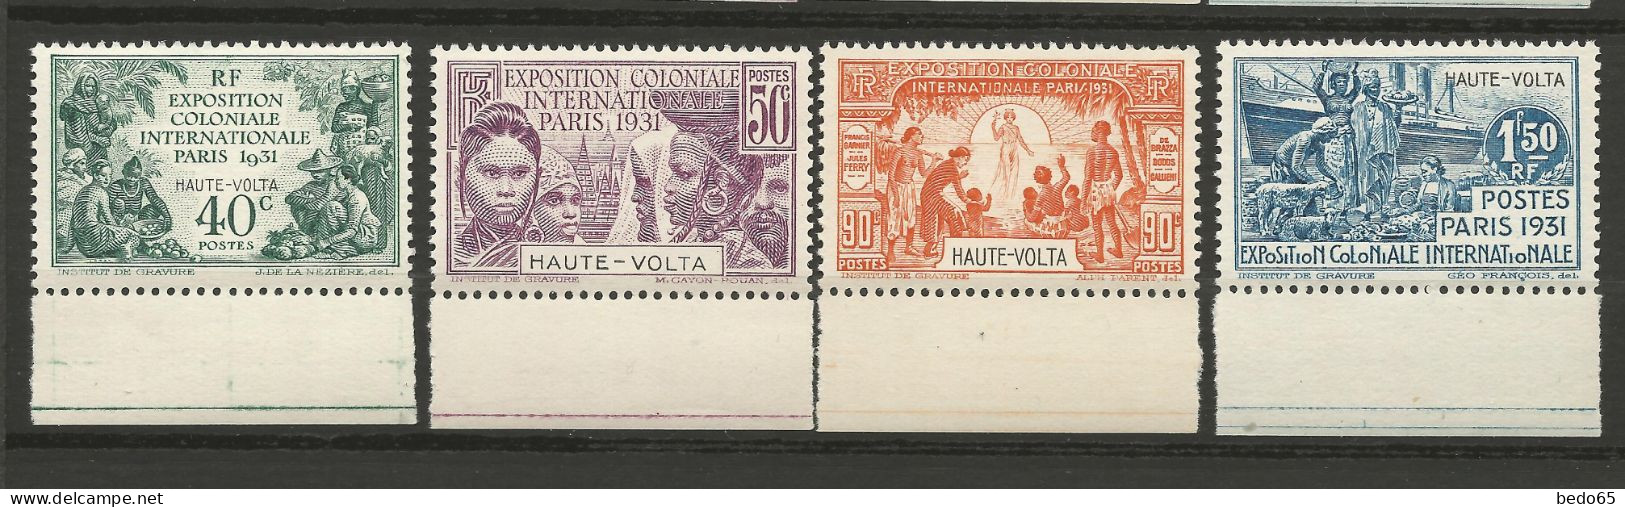 HAUTE-VOLTA EXPO COLONIALE 1931 Série Complète N° 66 à 69 BDF NEUF** LUXE SANS CHARNIERE / Hingeless  / MNH - Nuevos